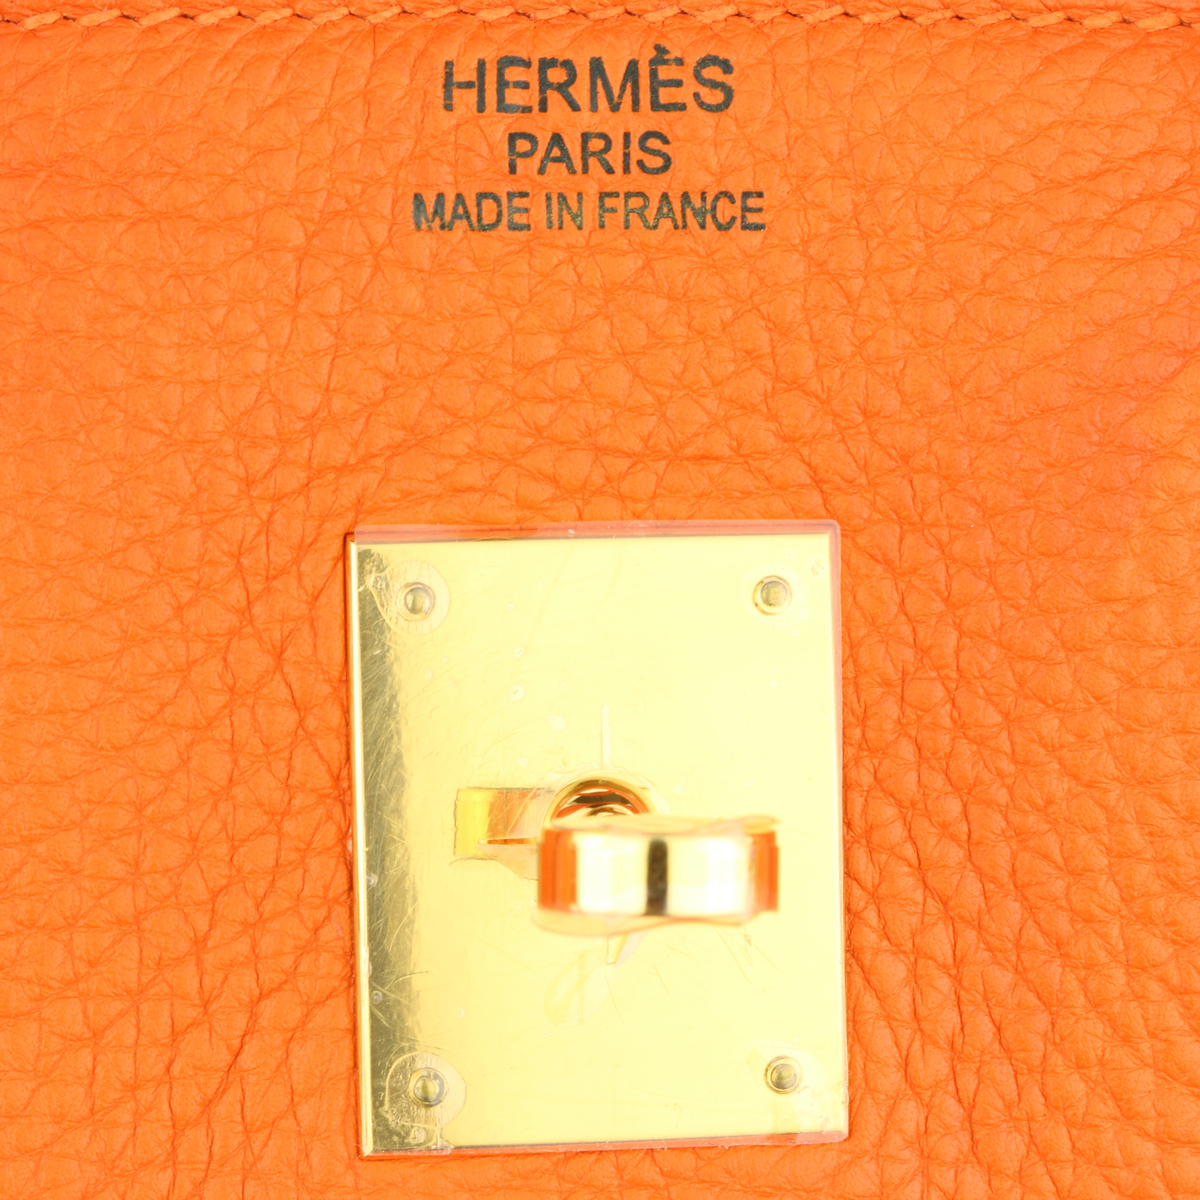 Hermes Orange Togo Leather Gold Hardware Birkin 35 Bag Hermes